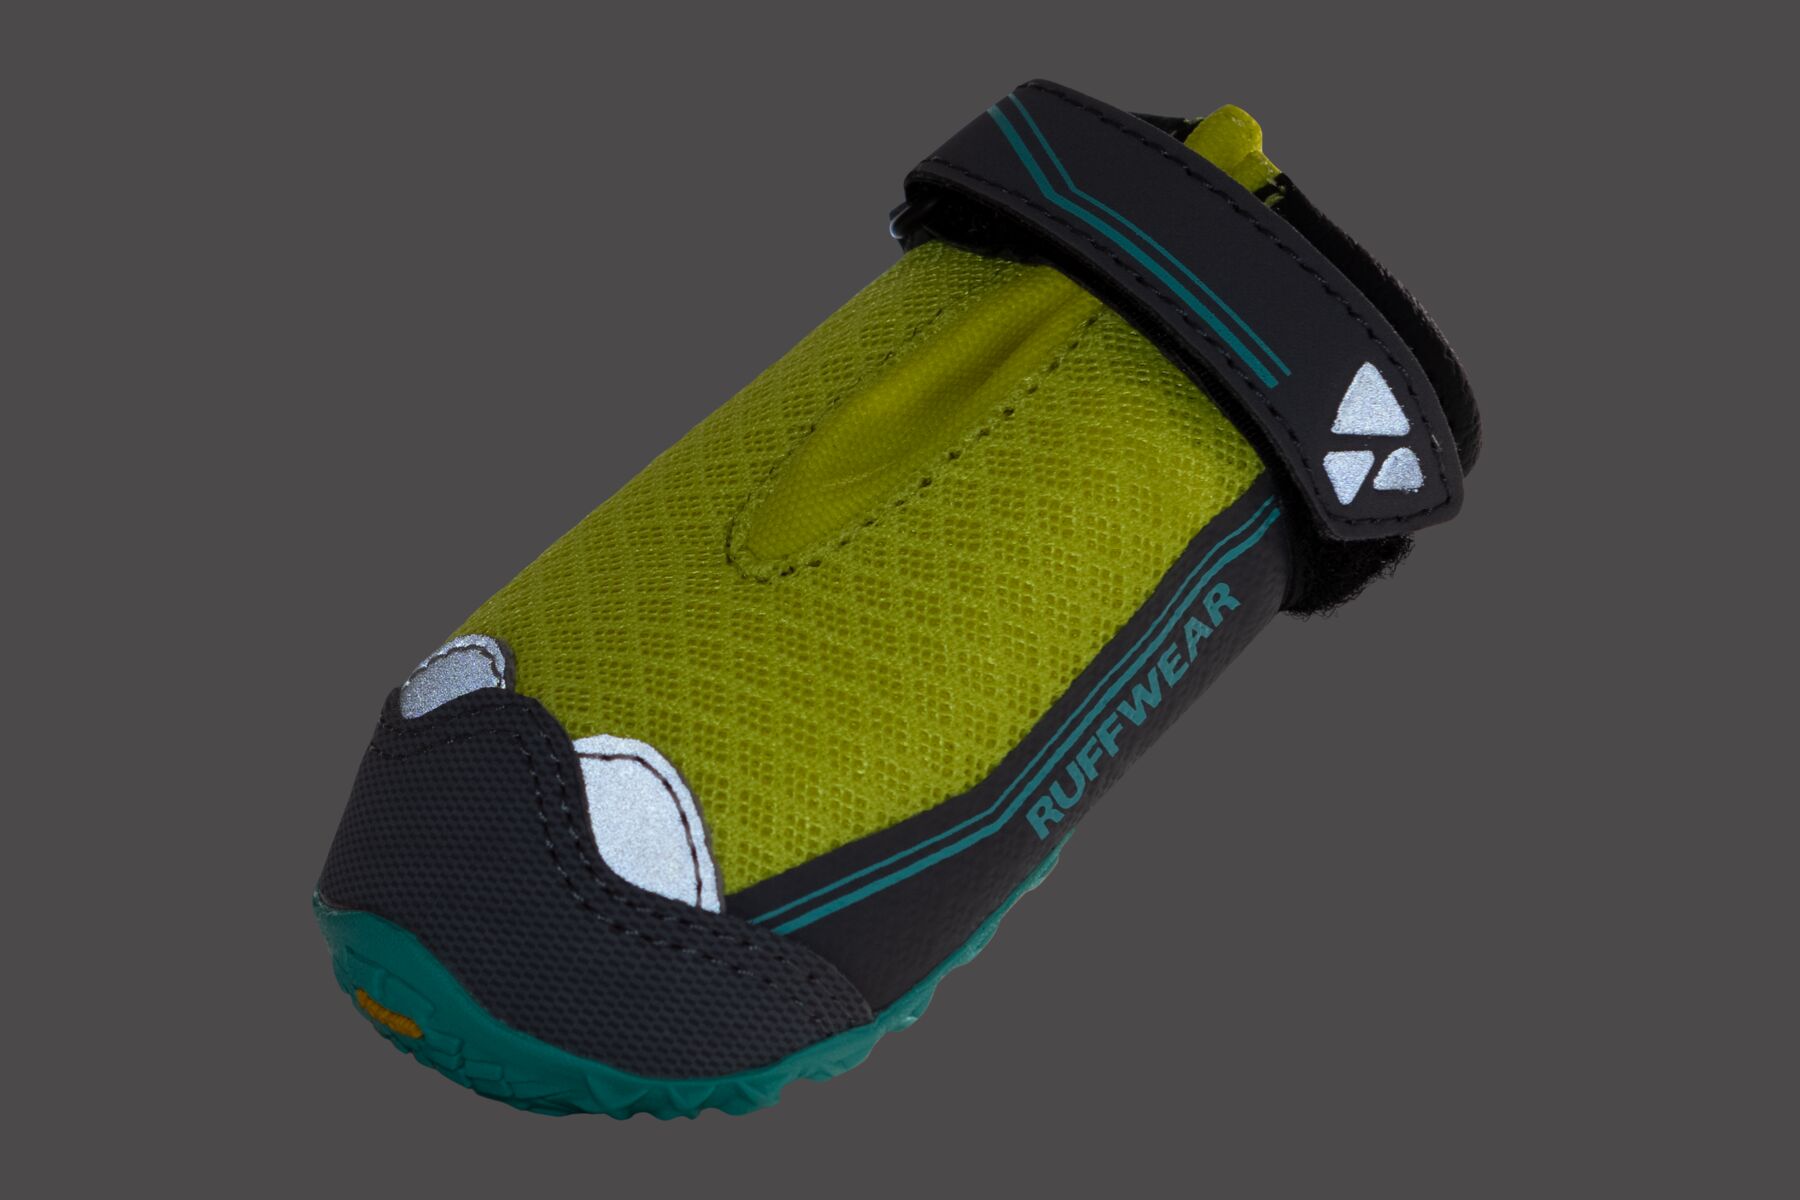 RuffWear Grip Trex™ Boots - set of 2 - Lichen Green